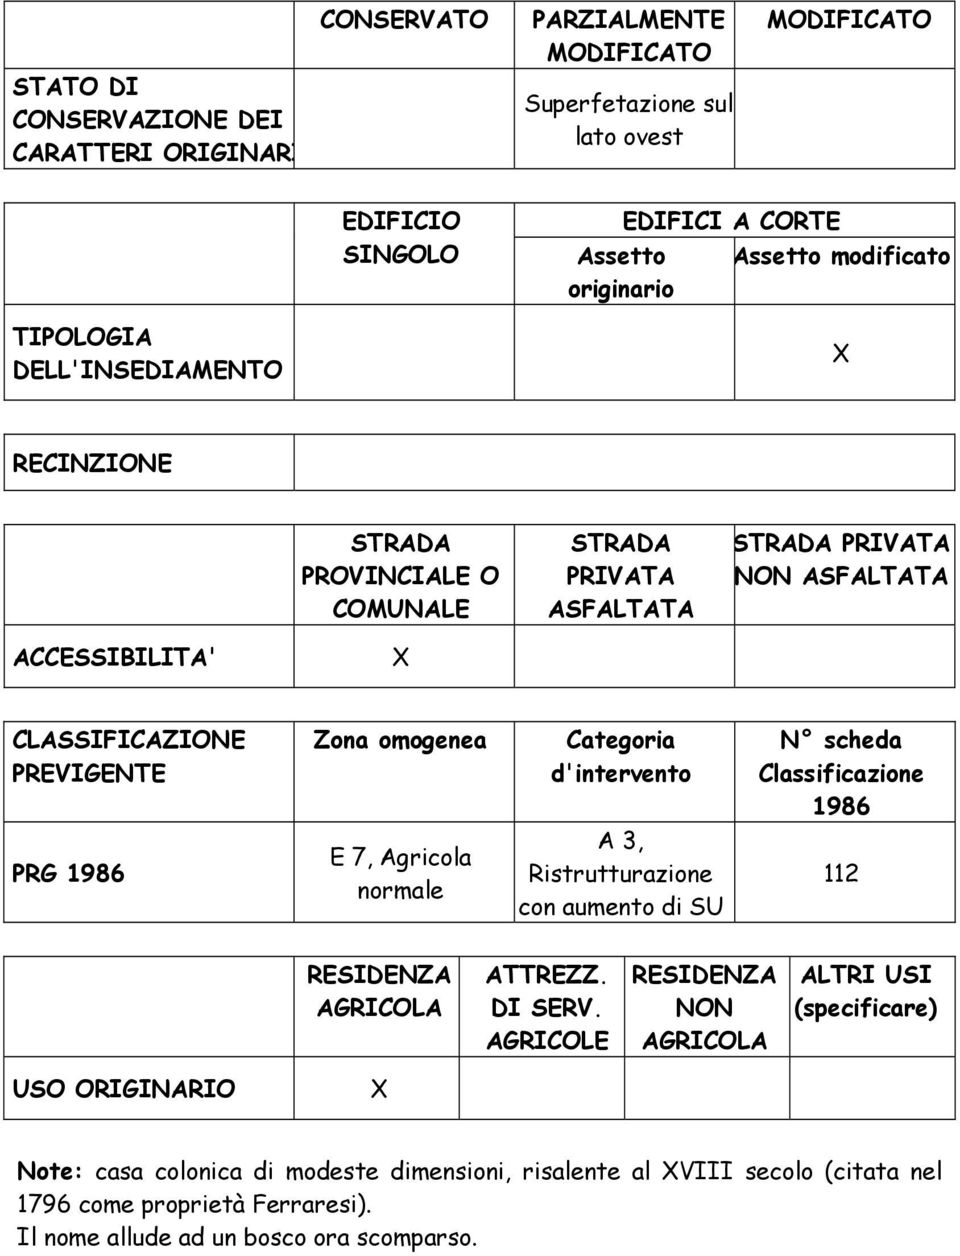 scheda Classificazione 1986 PRG 1986 E 7, Agricola normale A 3, Ristrutturazione con aumento di SU 112 ATTREZZ. DI SERV.